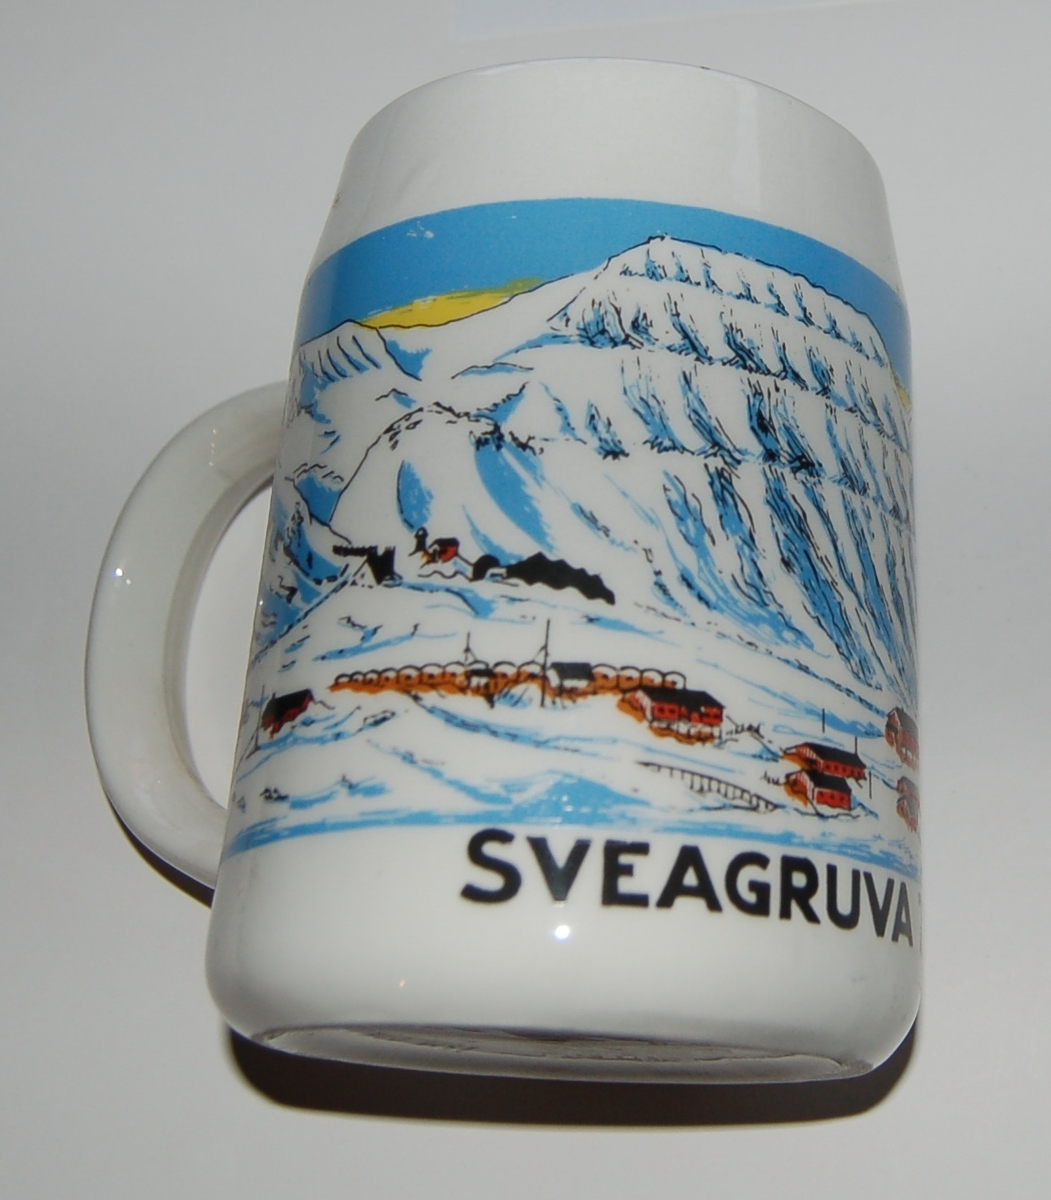 Utsmykka kjegleformet souvenirkrus i glassert porselen.
Motiv: Gruvelandsby
Tekst: Sveagruva - 77 Grader 55 Minutt N.